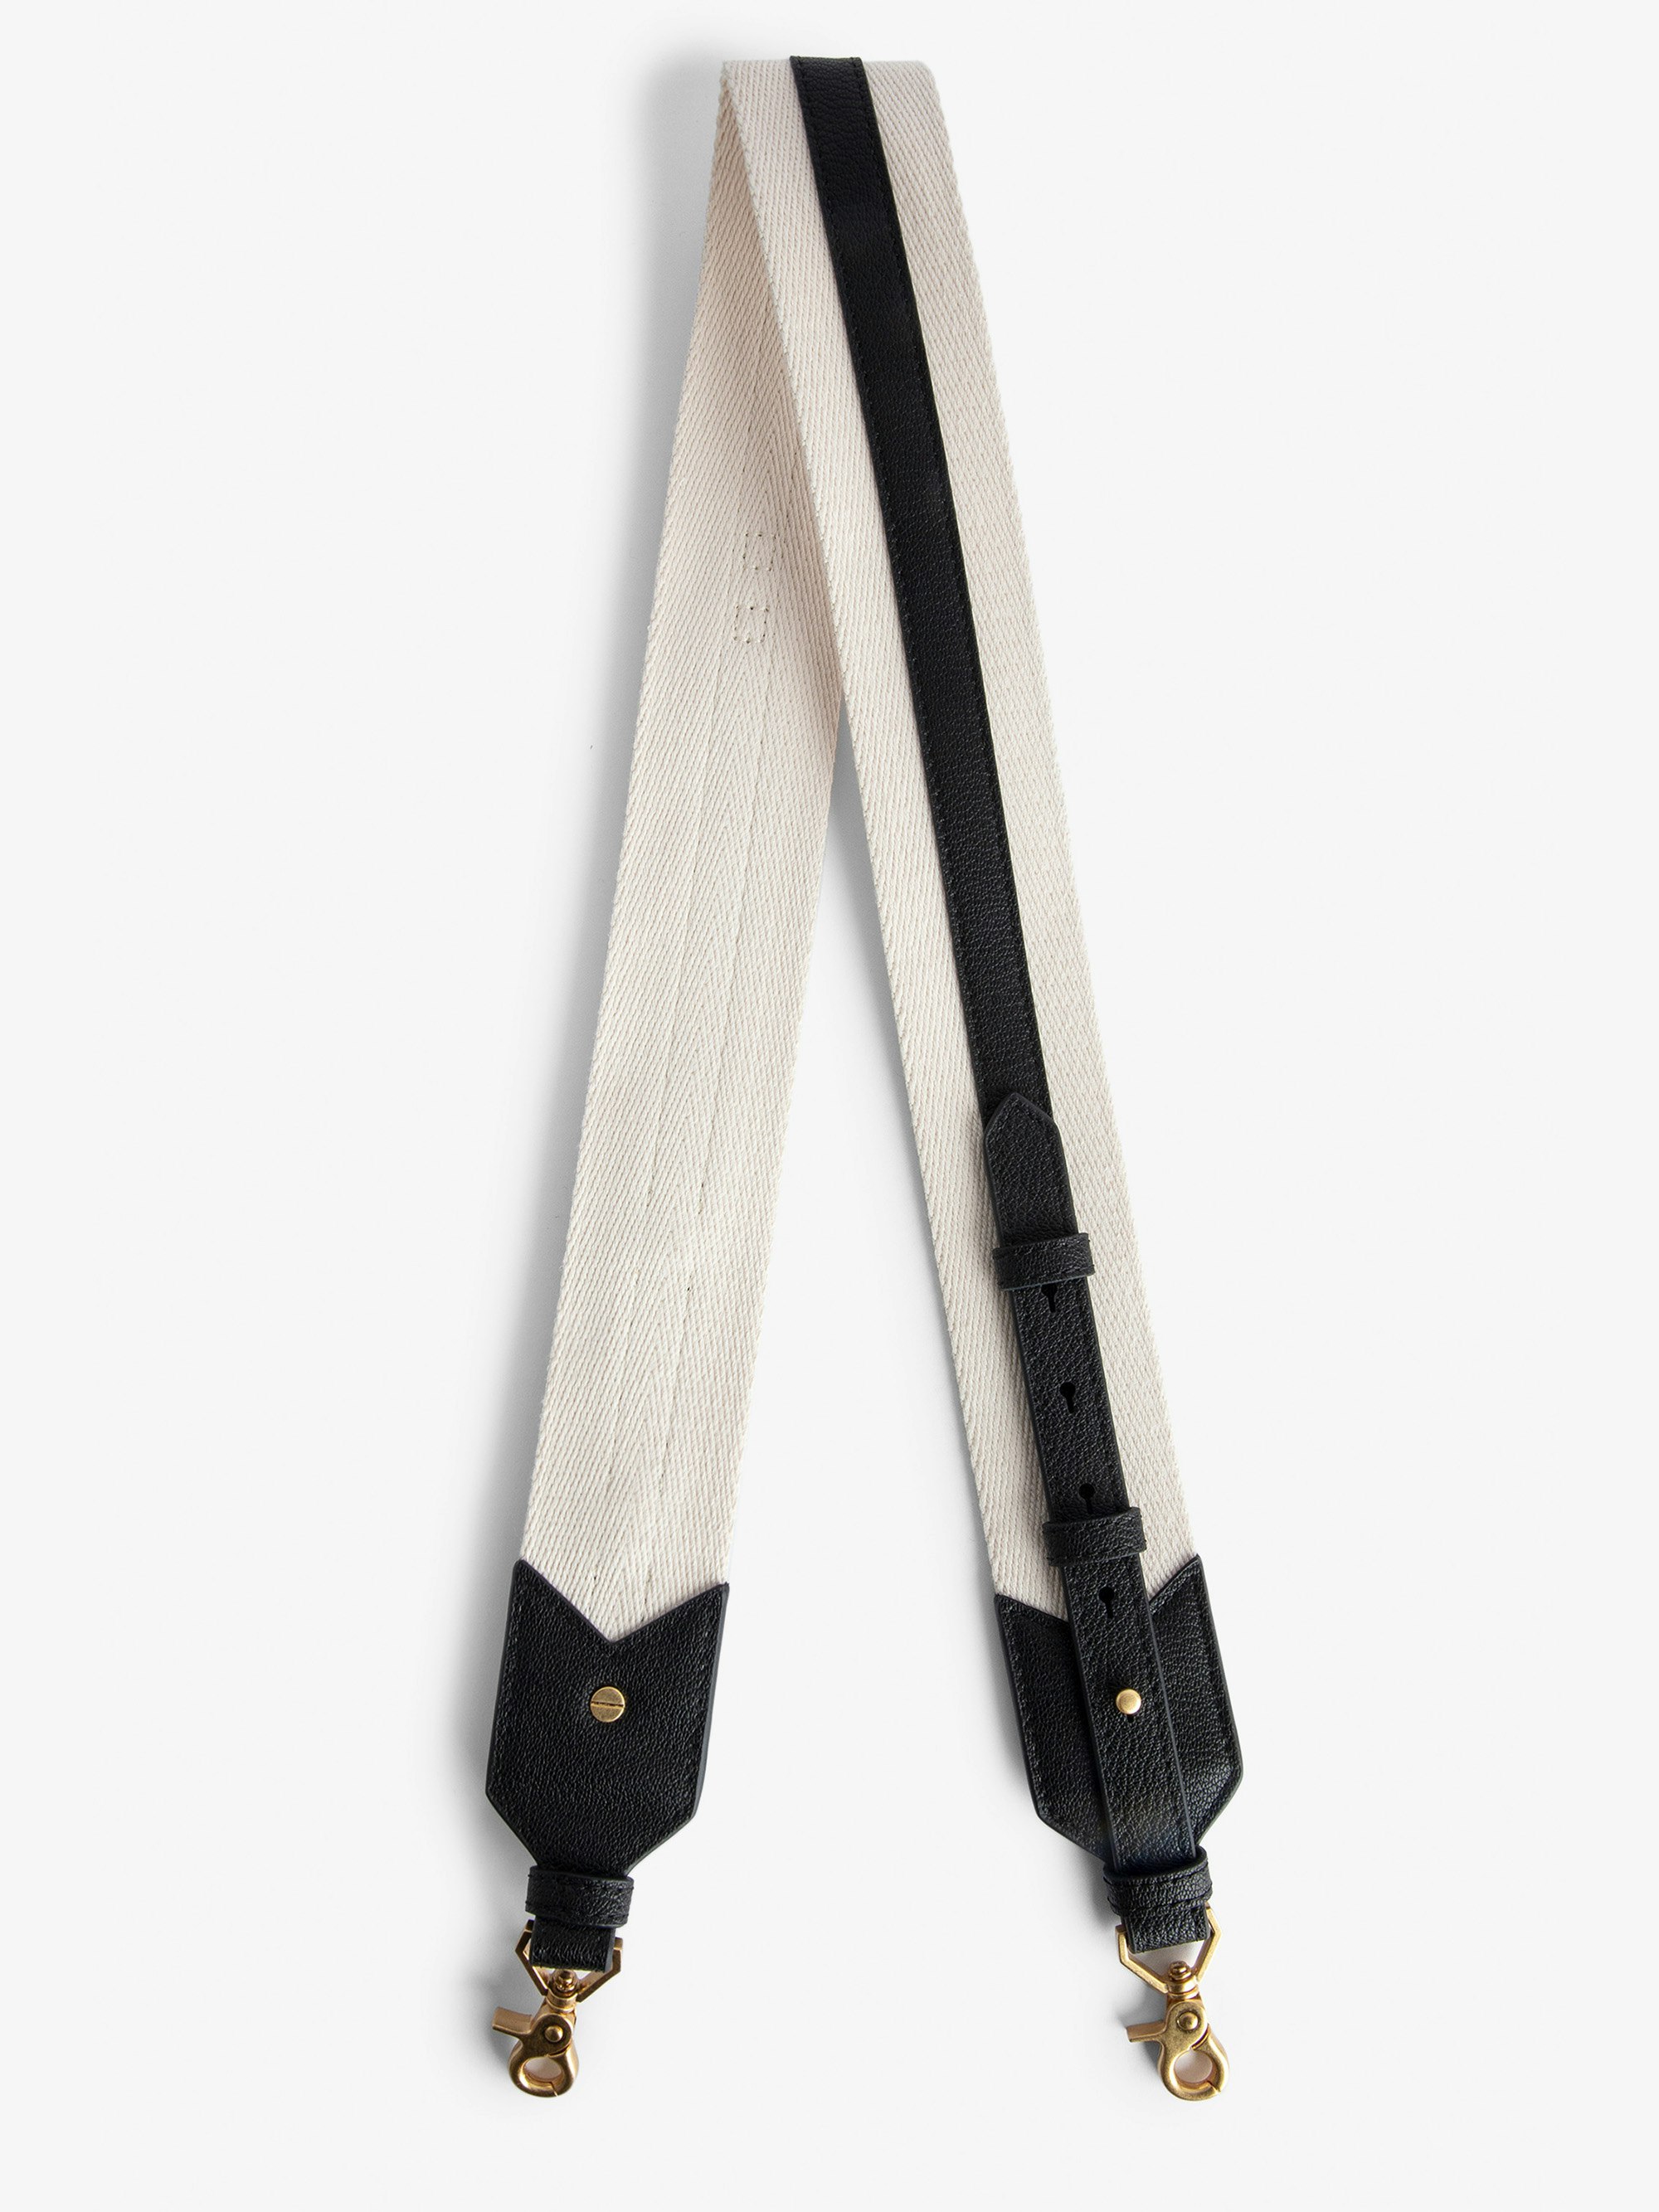 Adjustable Shoulder Strap - Adjustable ecru canvas shoulder strap with black leather panels.